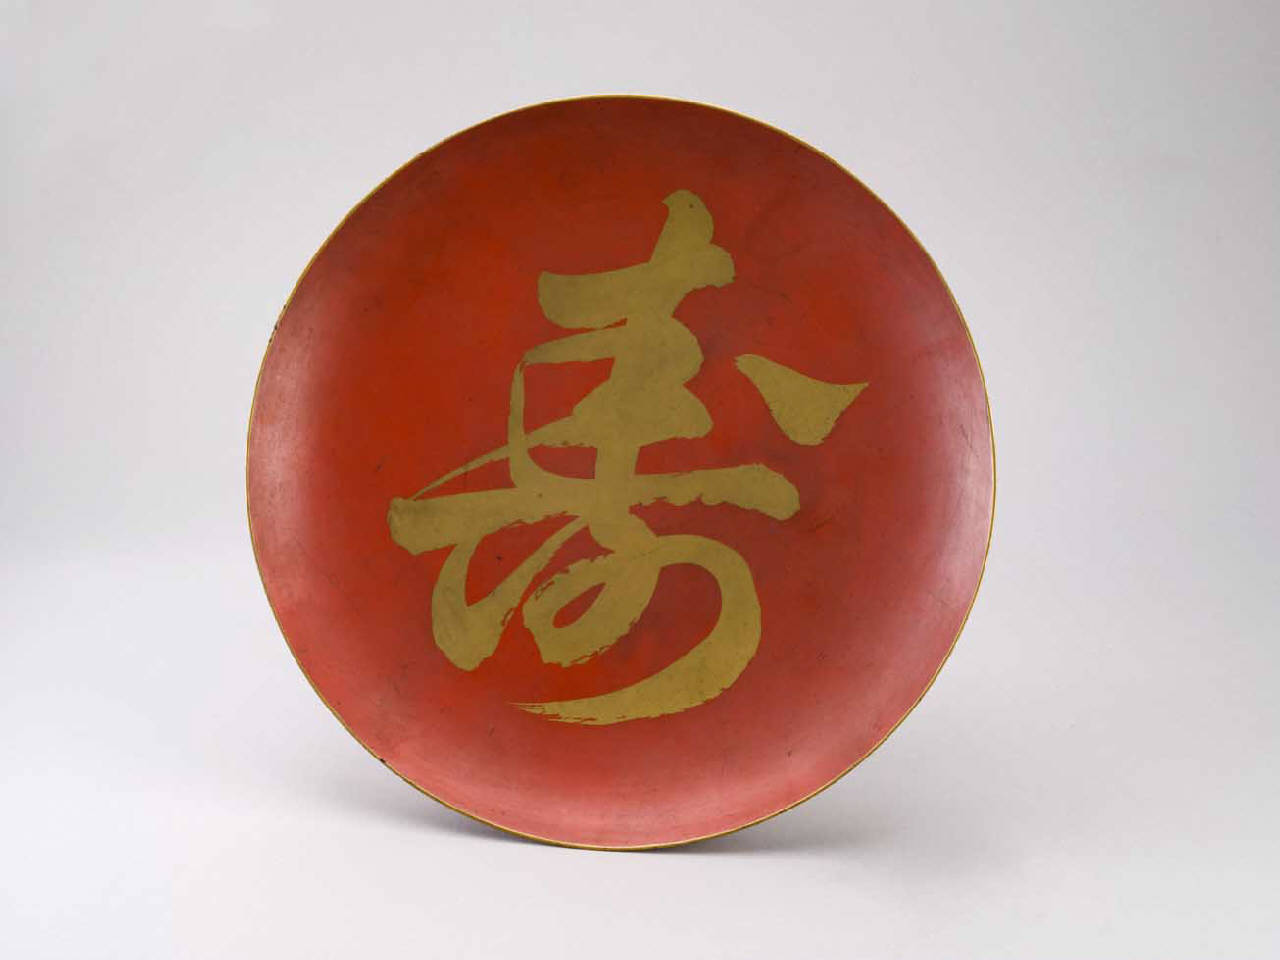 kotobuki (piatto) - manifattura giapponese (sec. XIX)